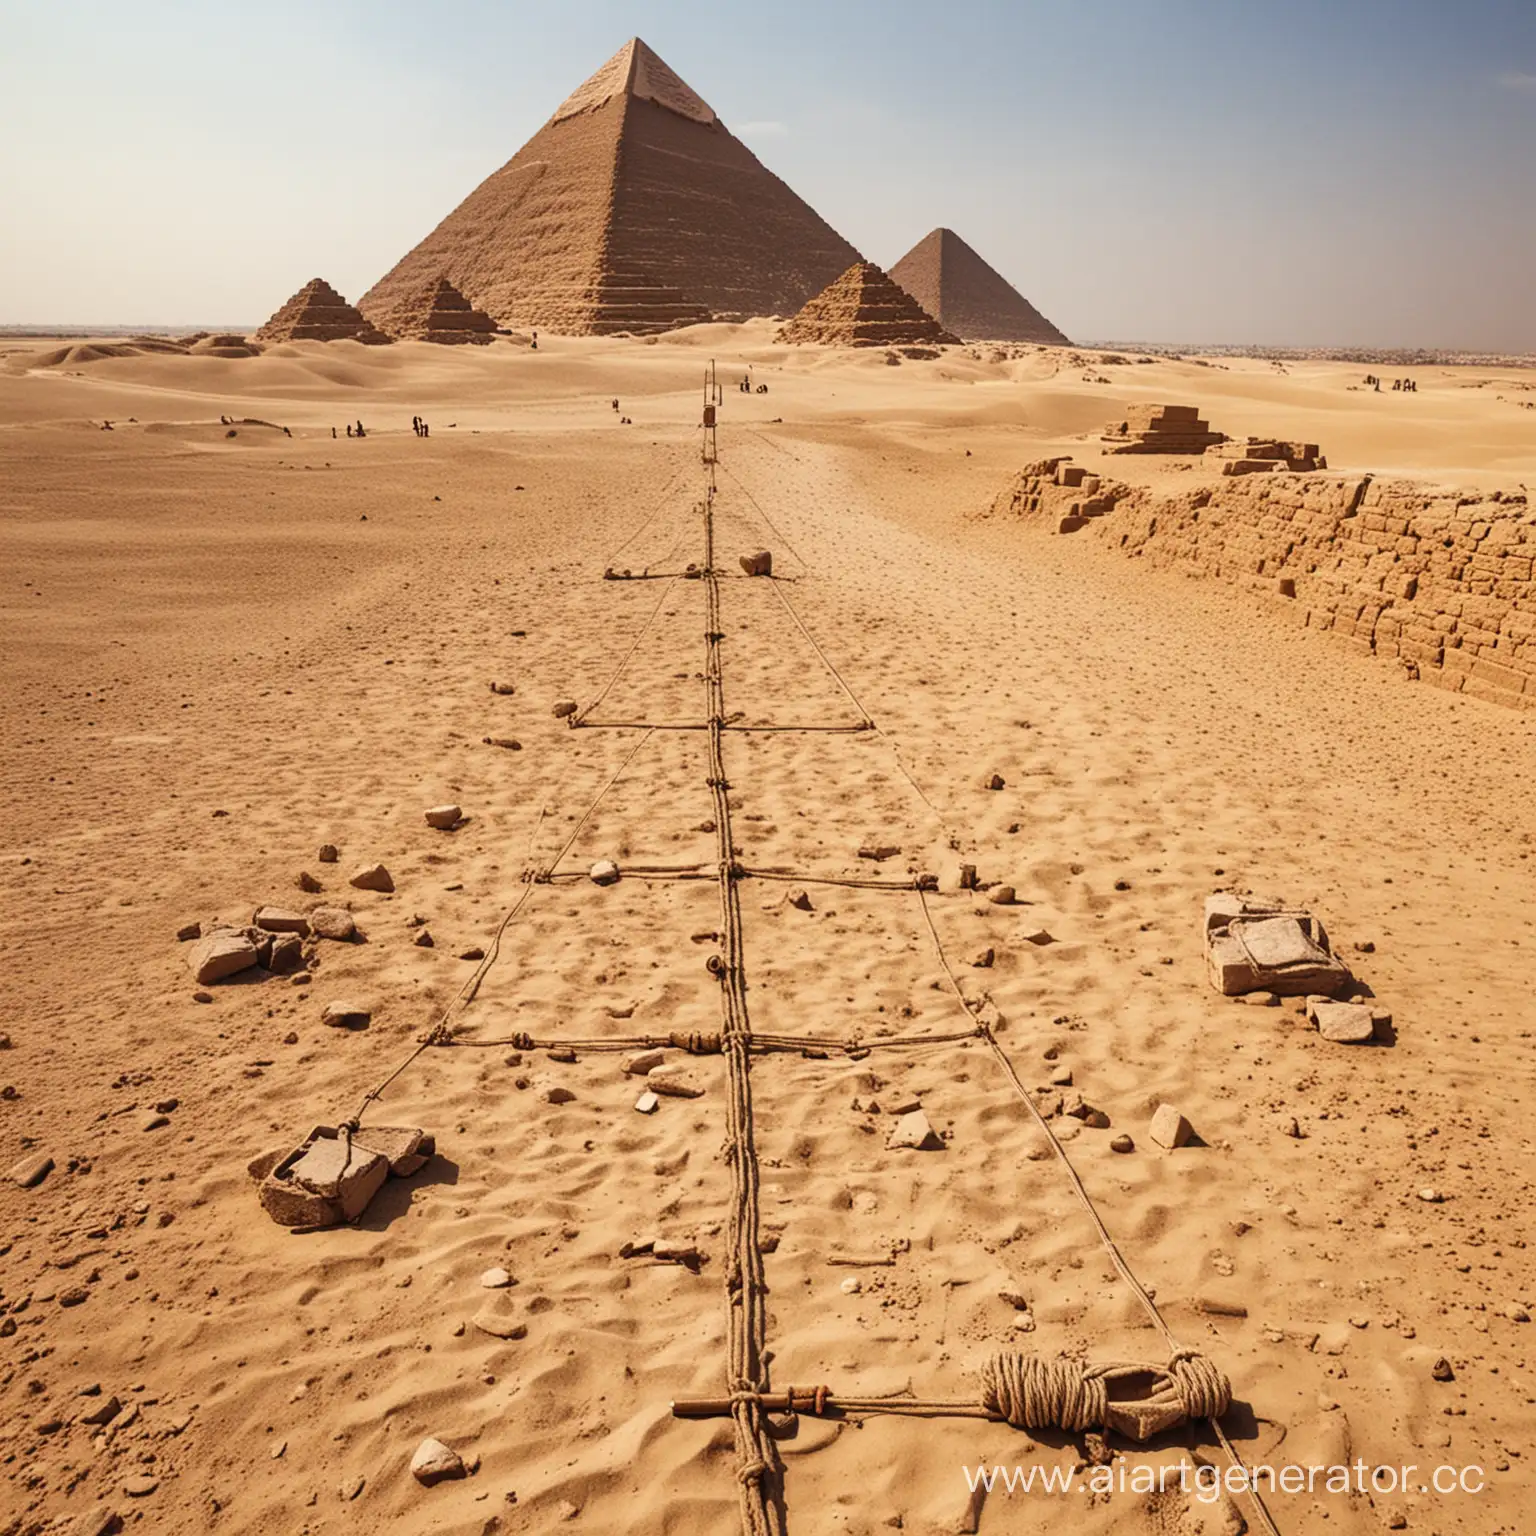 В древности измерение производилось с помощью примитивных инструментов, таких как верёвки и палки. Первые измерительные приборы были использованы в Древнем Египте для землеизмерения и строительства пирамид.